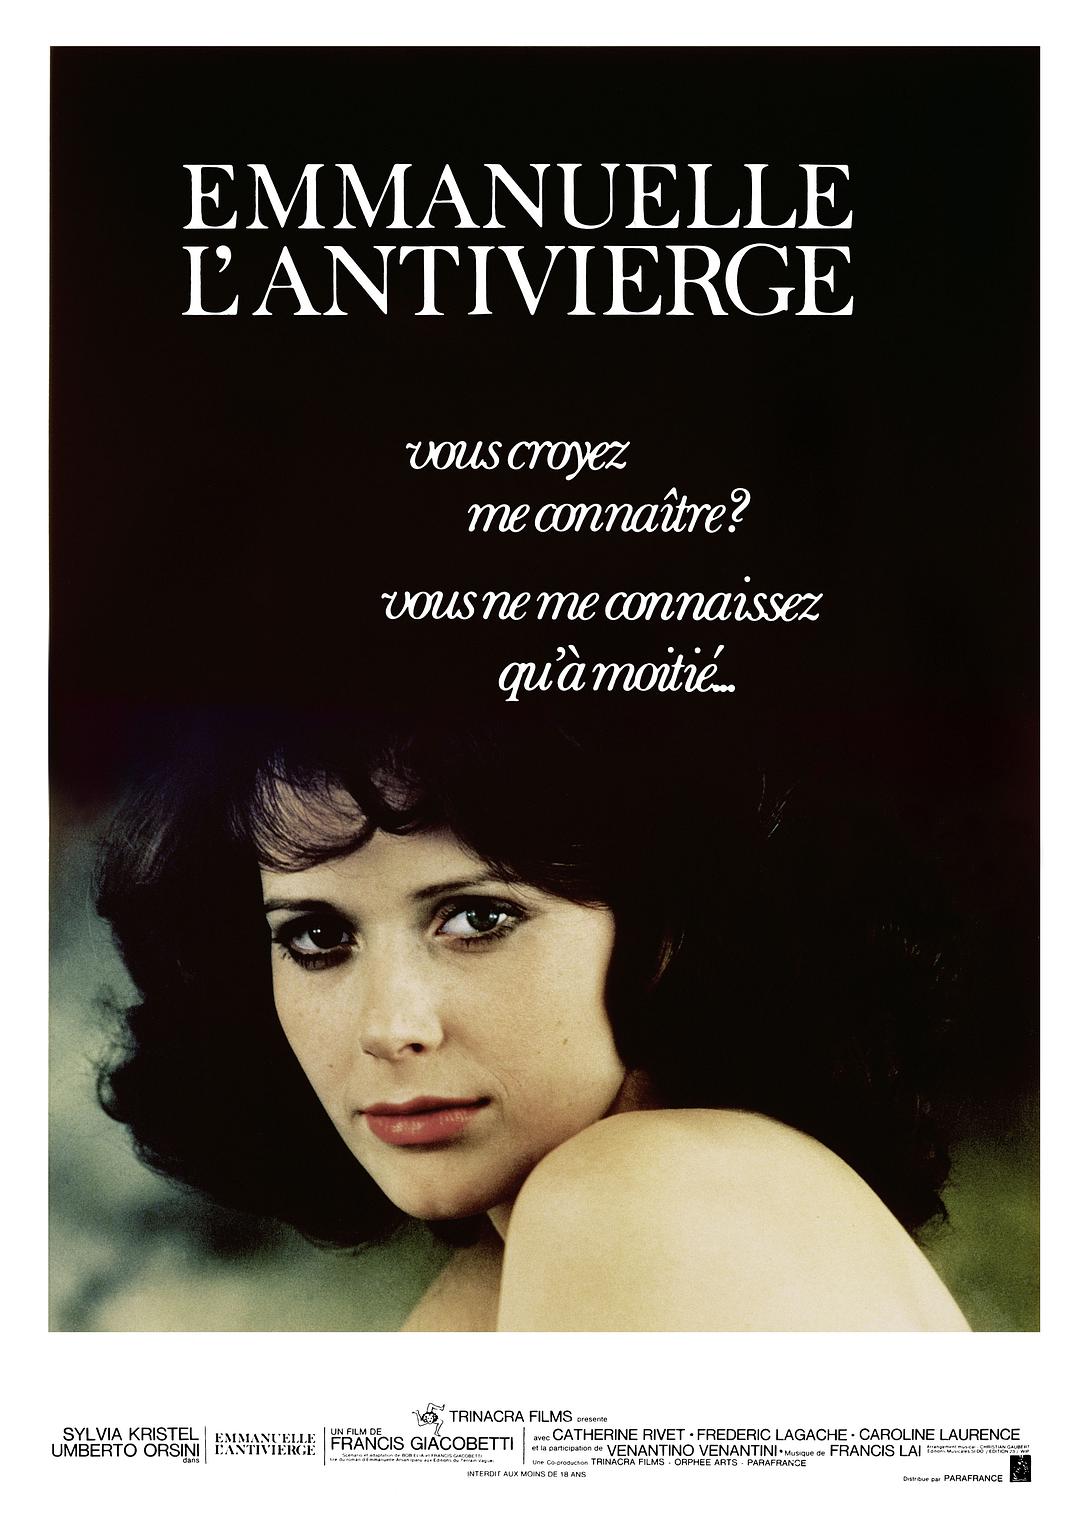 艾曼妞2 爱的教育 / Emmanuelle: L'antivierge / 艾曼纽2[DIY简繁字幕] Emmanuelle 2 1975 1080p Blu-ray AVC LPCM 2.0-DIY@PTHome[36.78GB]-2.jpg